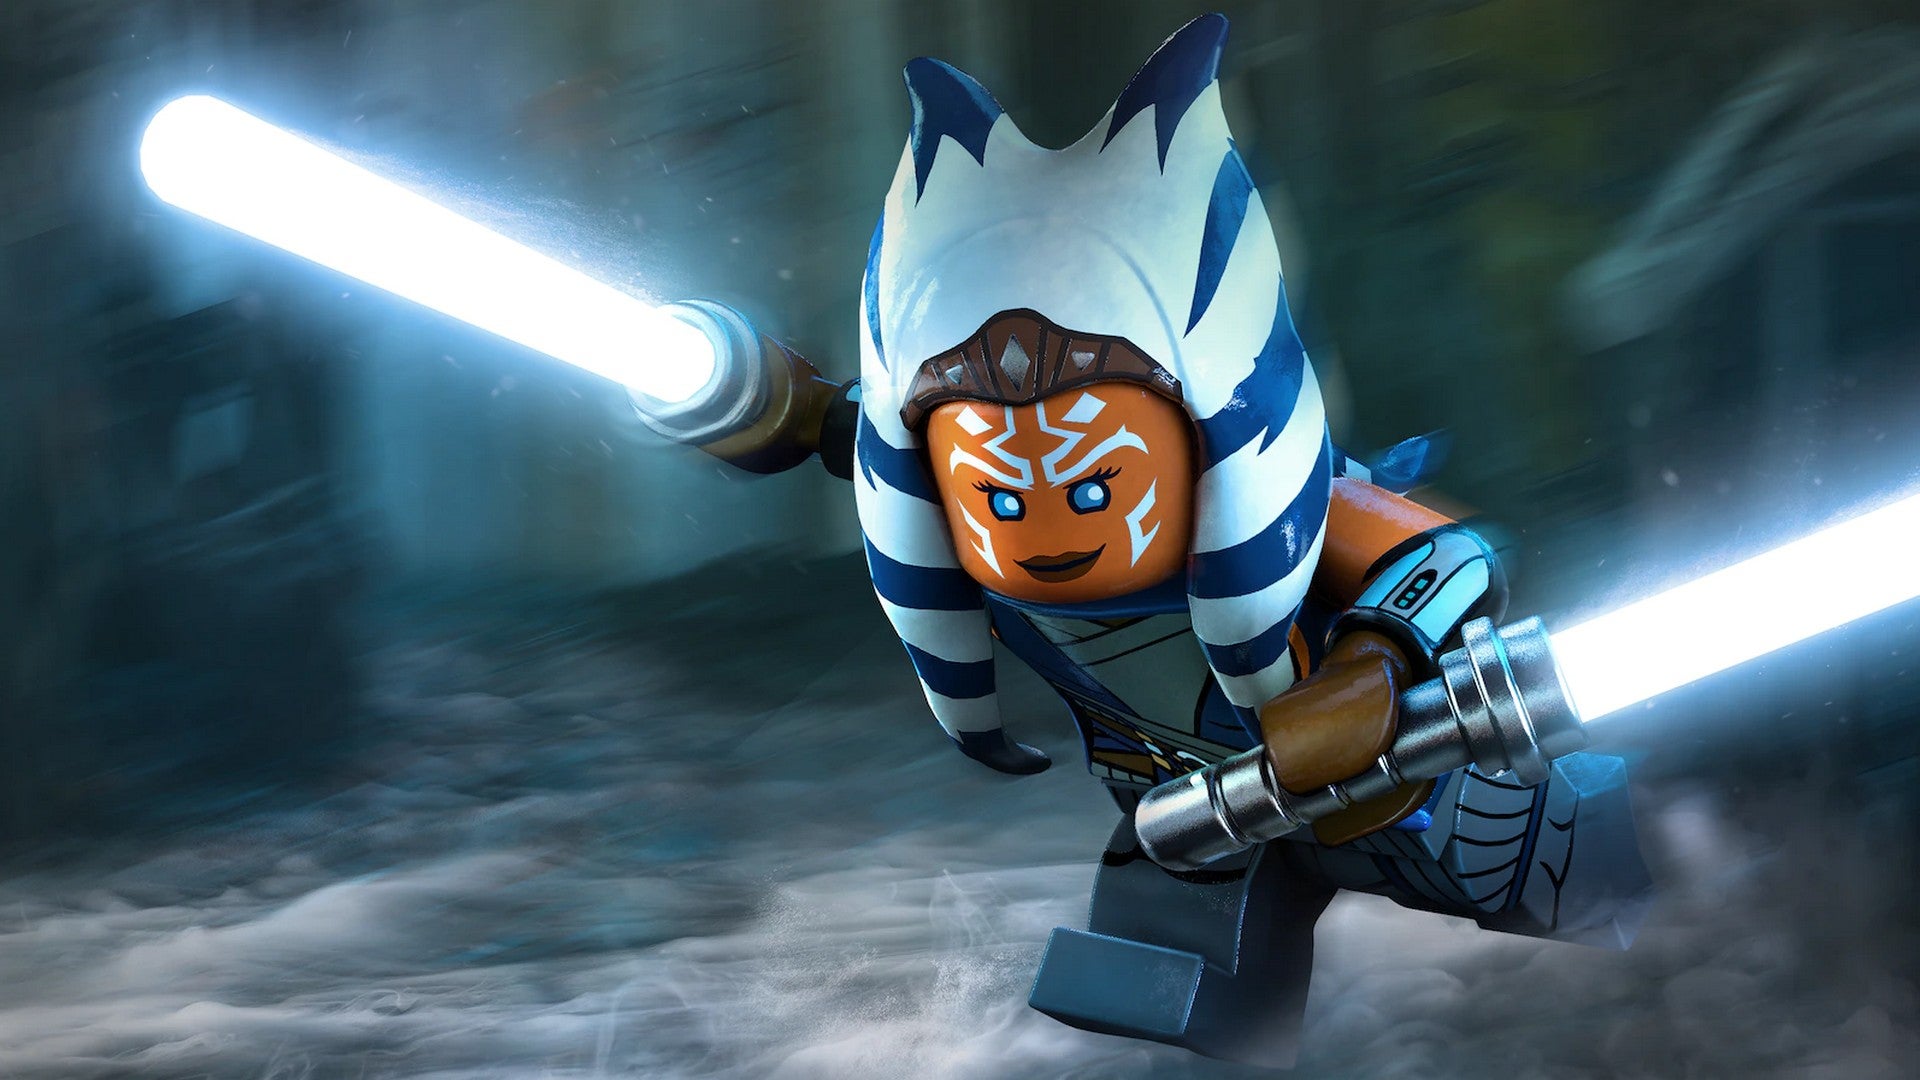 Bilder zu Lego Star Wars Skywalker Saga: 2 neue DLCs zu Mandalorian und Bad Batch veröffentlicht